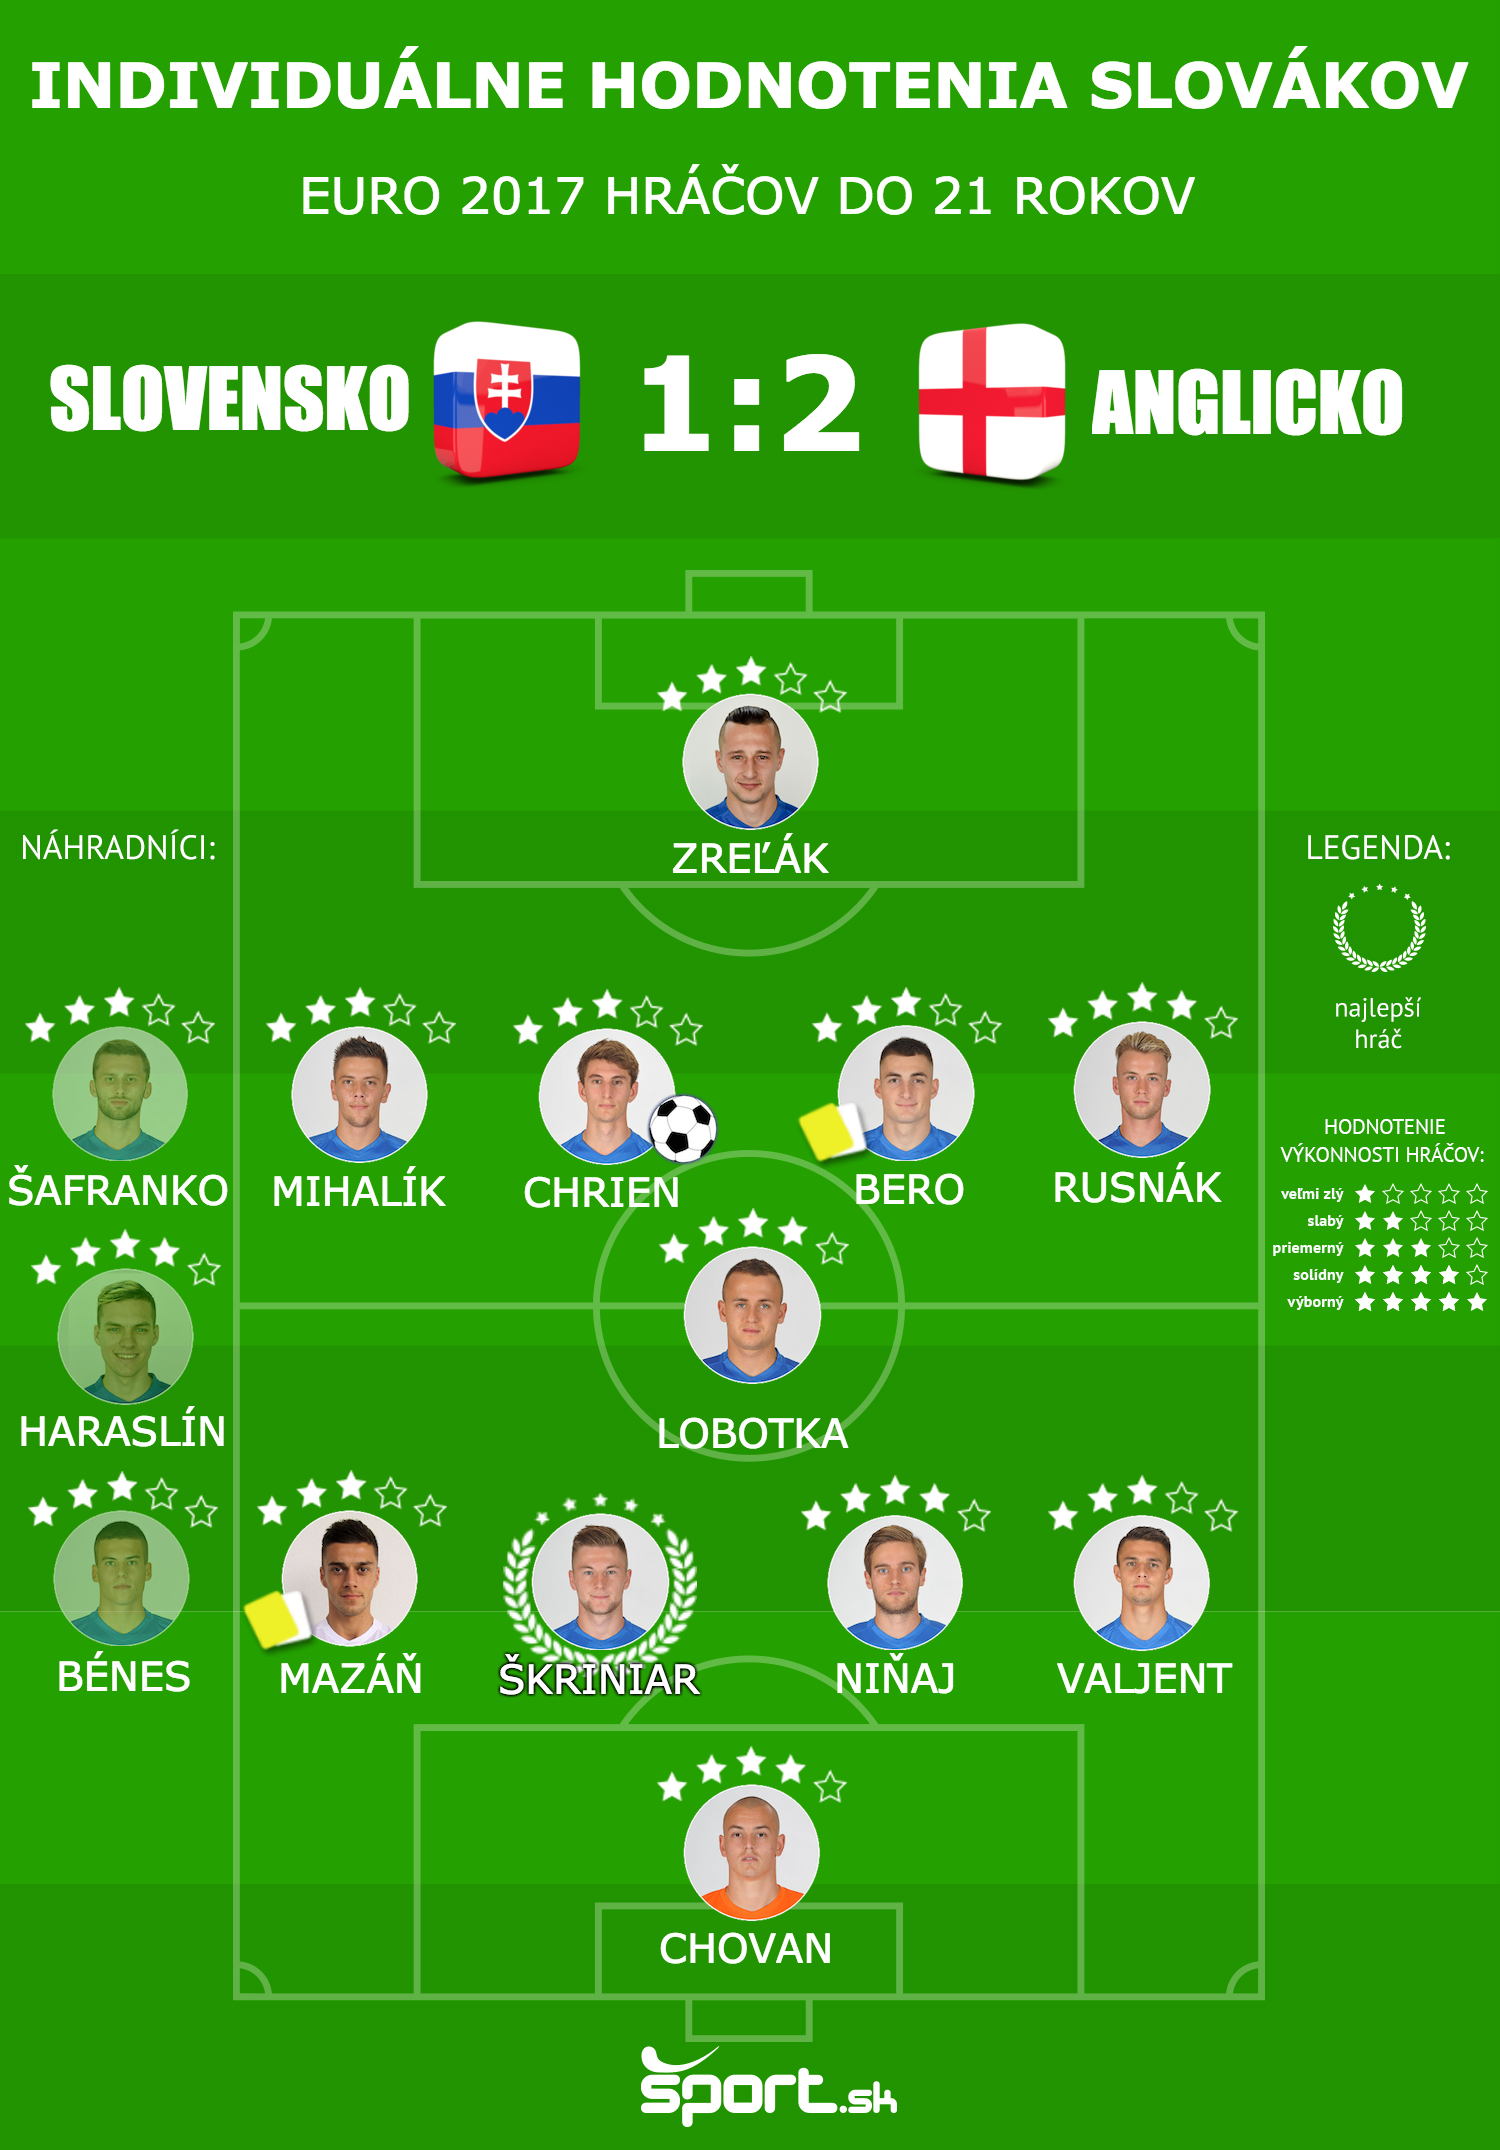 Individuálne hodnotenia hráčov: Slovensko - Anglicko (EURO 2017 do 21 rokov).